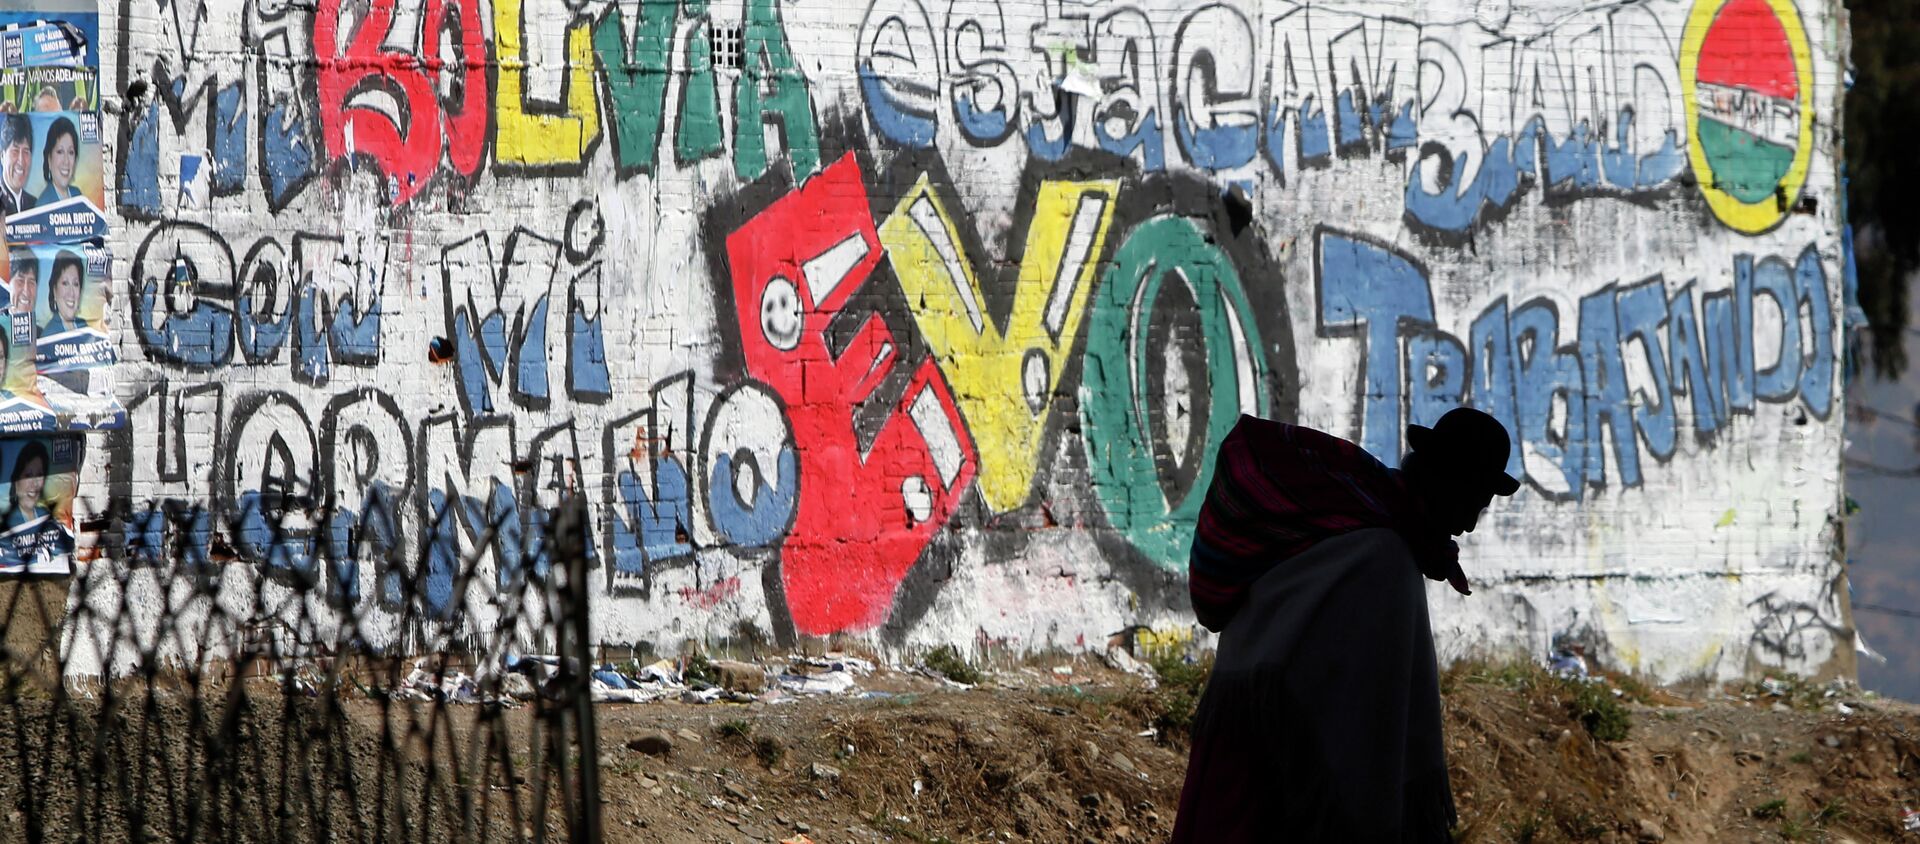 Eslogan en apoyo del presidente Evo Morales pintado en una pared en La Paz, Bolivia, 2014 - Sputnik Mundo, 1920, 08.10.2019